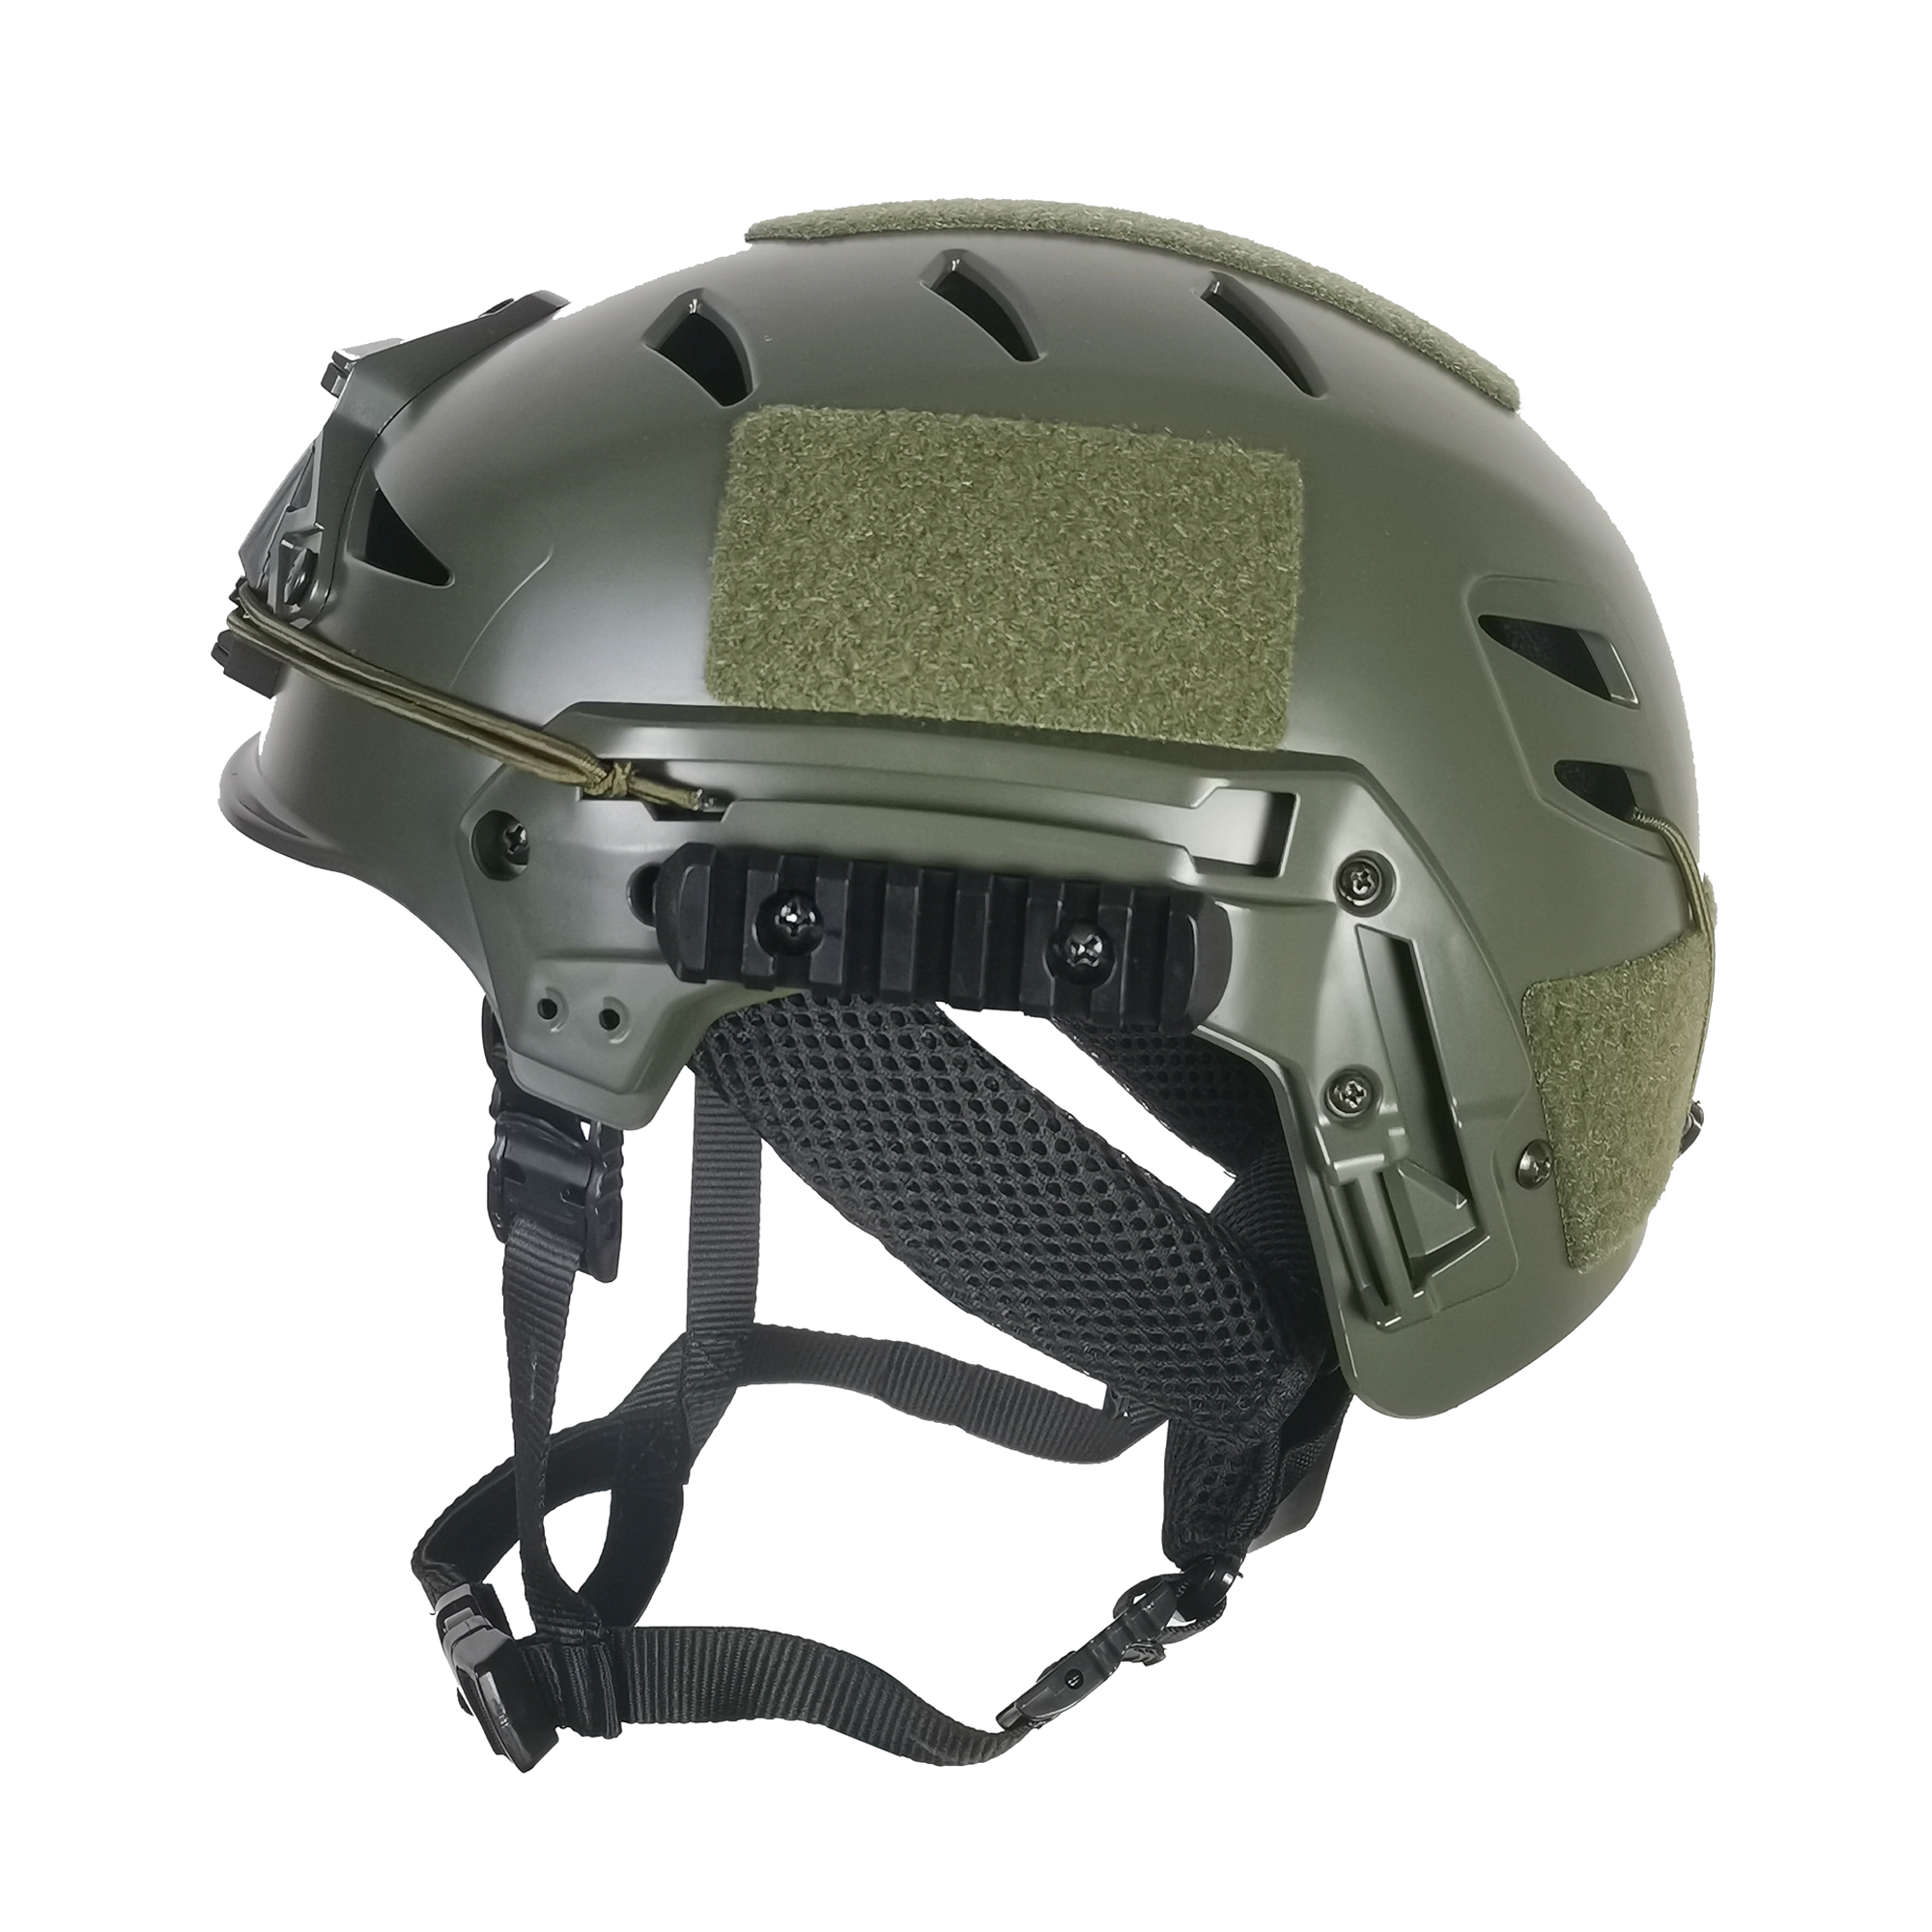 How Effective Is The Ballistic Helmet?